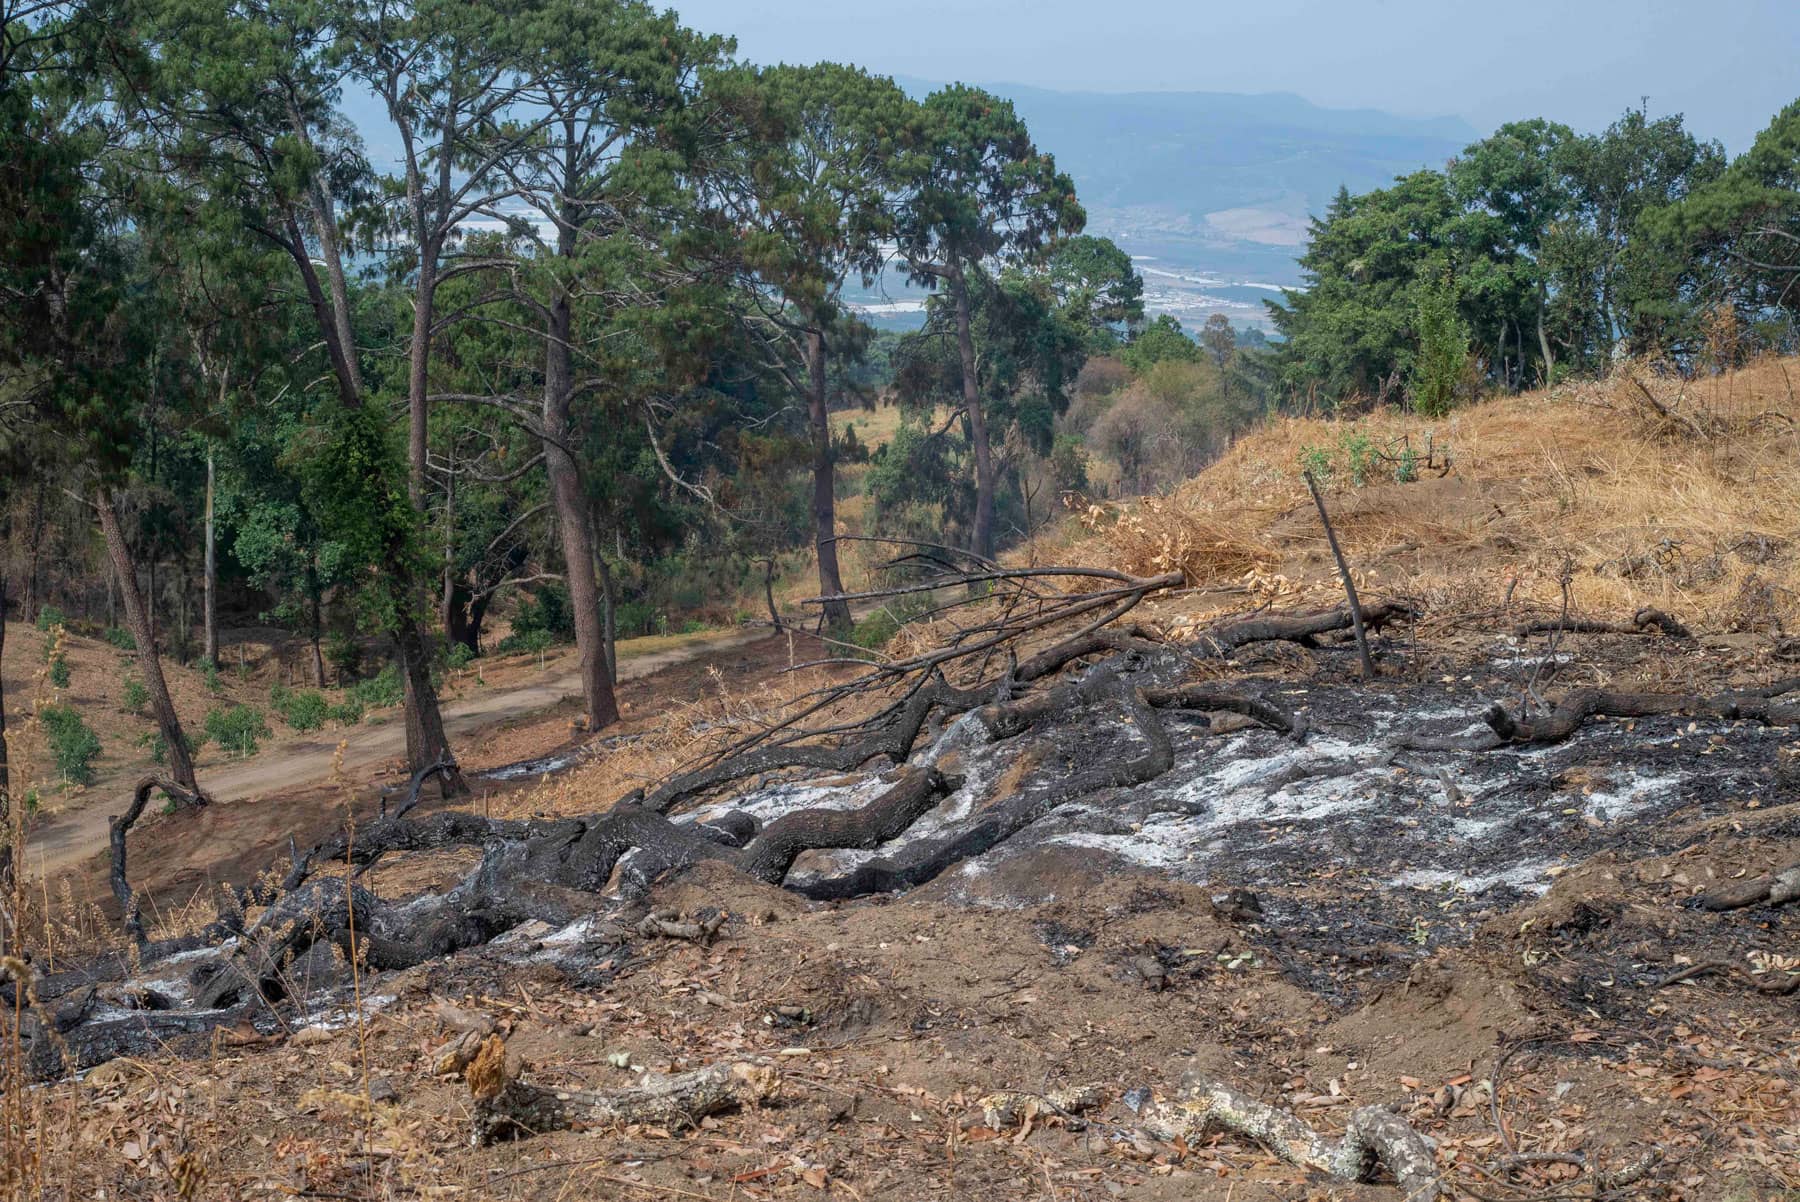 Los incendios provocados son comunes en la región para limpiar los terrenos forestales. Foto: Abraham Pérez.